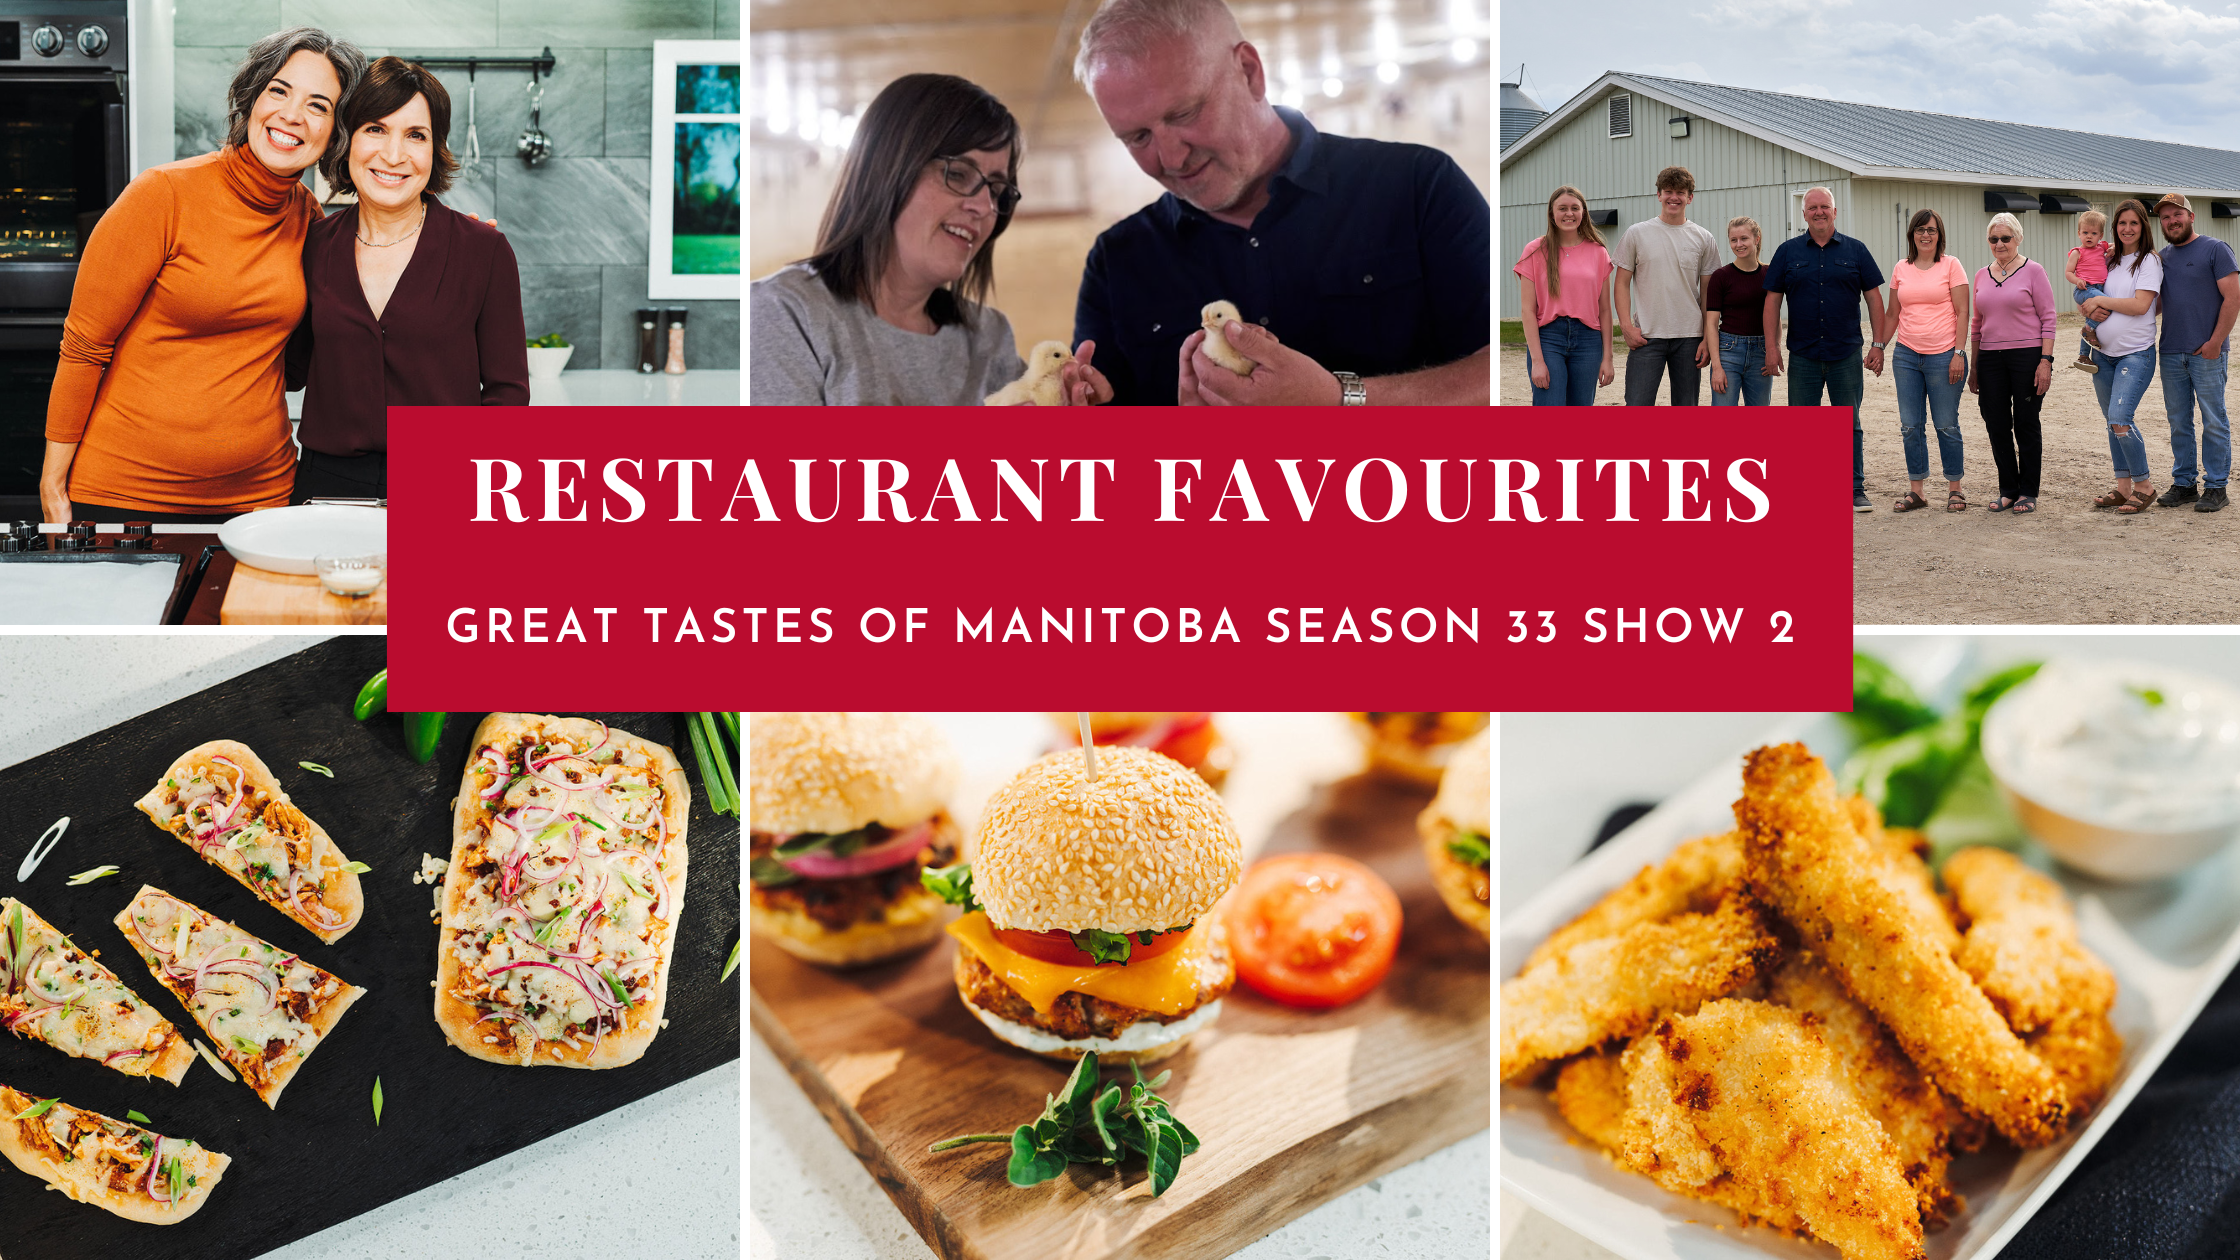 Great Tastes of Manitoba Season 33 Show 2: Restaurant Favourites